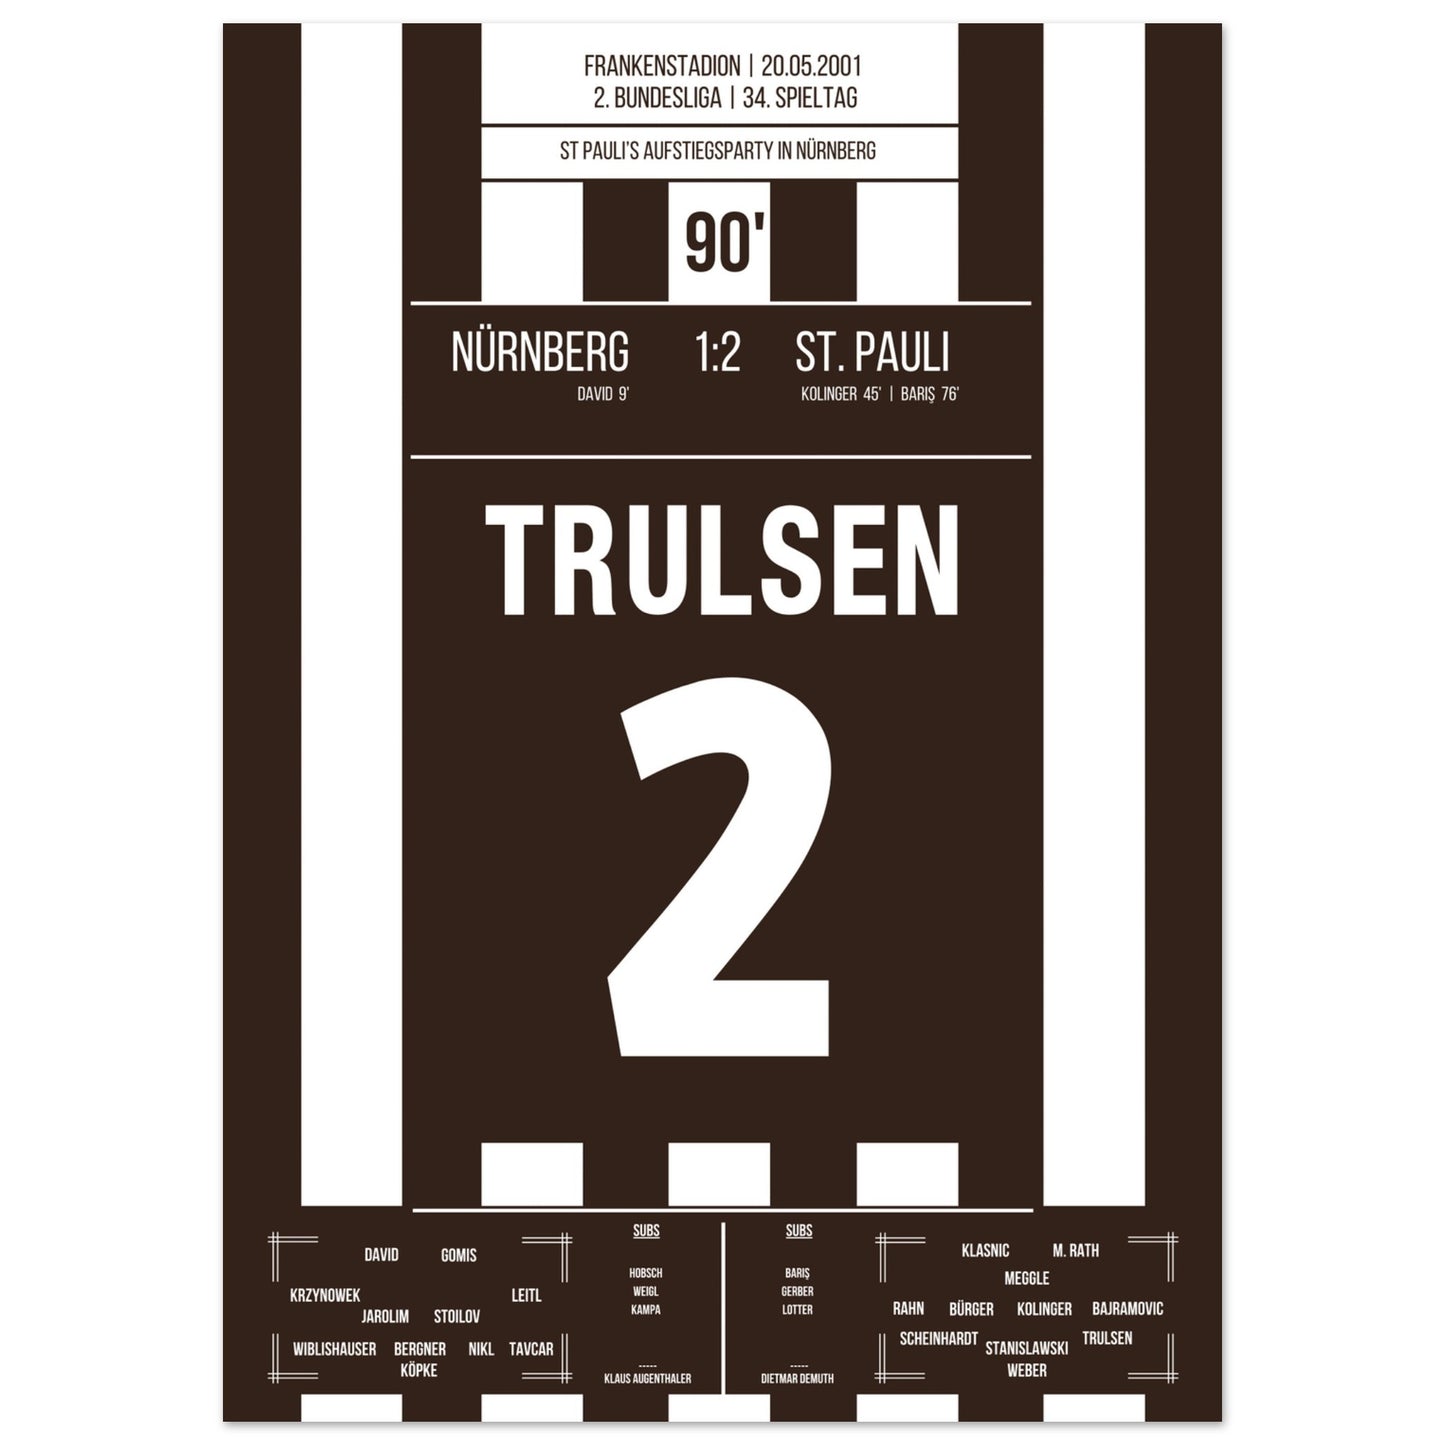 St Pauli's Aufstiegsfeier in Nürnberg 2001